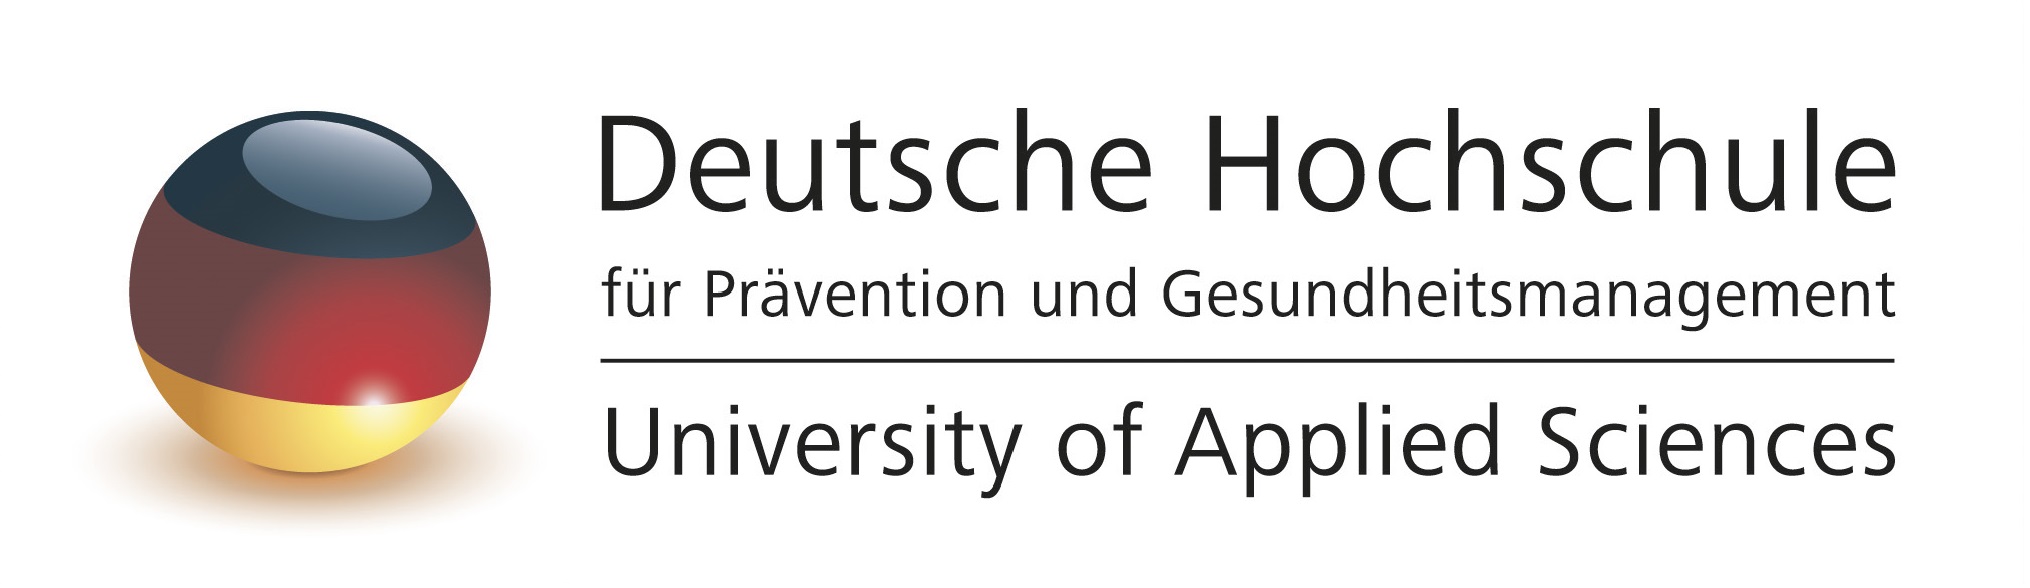 Deutsche Hochschule für Gesundheit und Prevention Logo